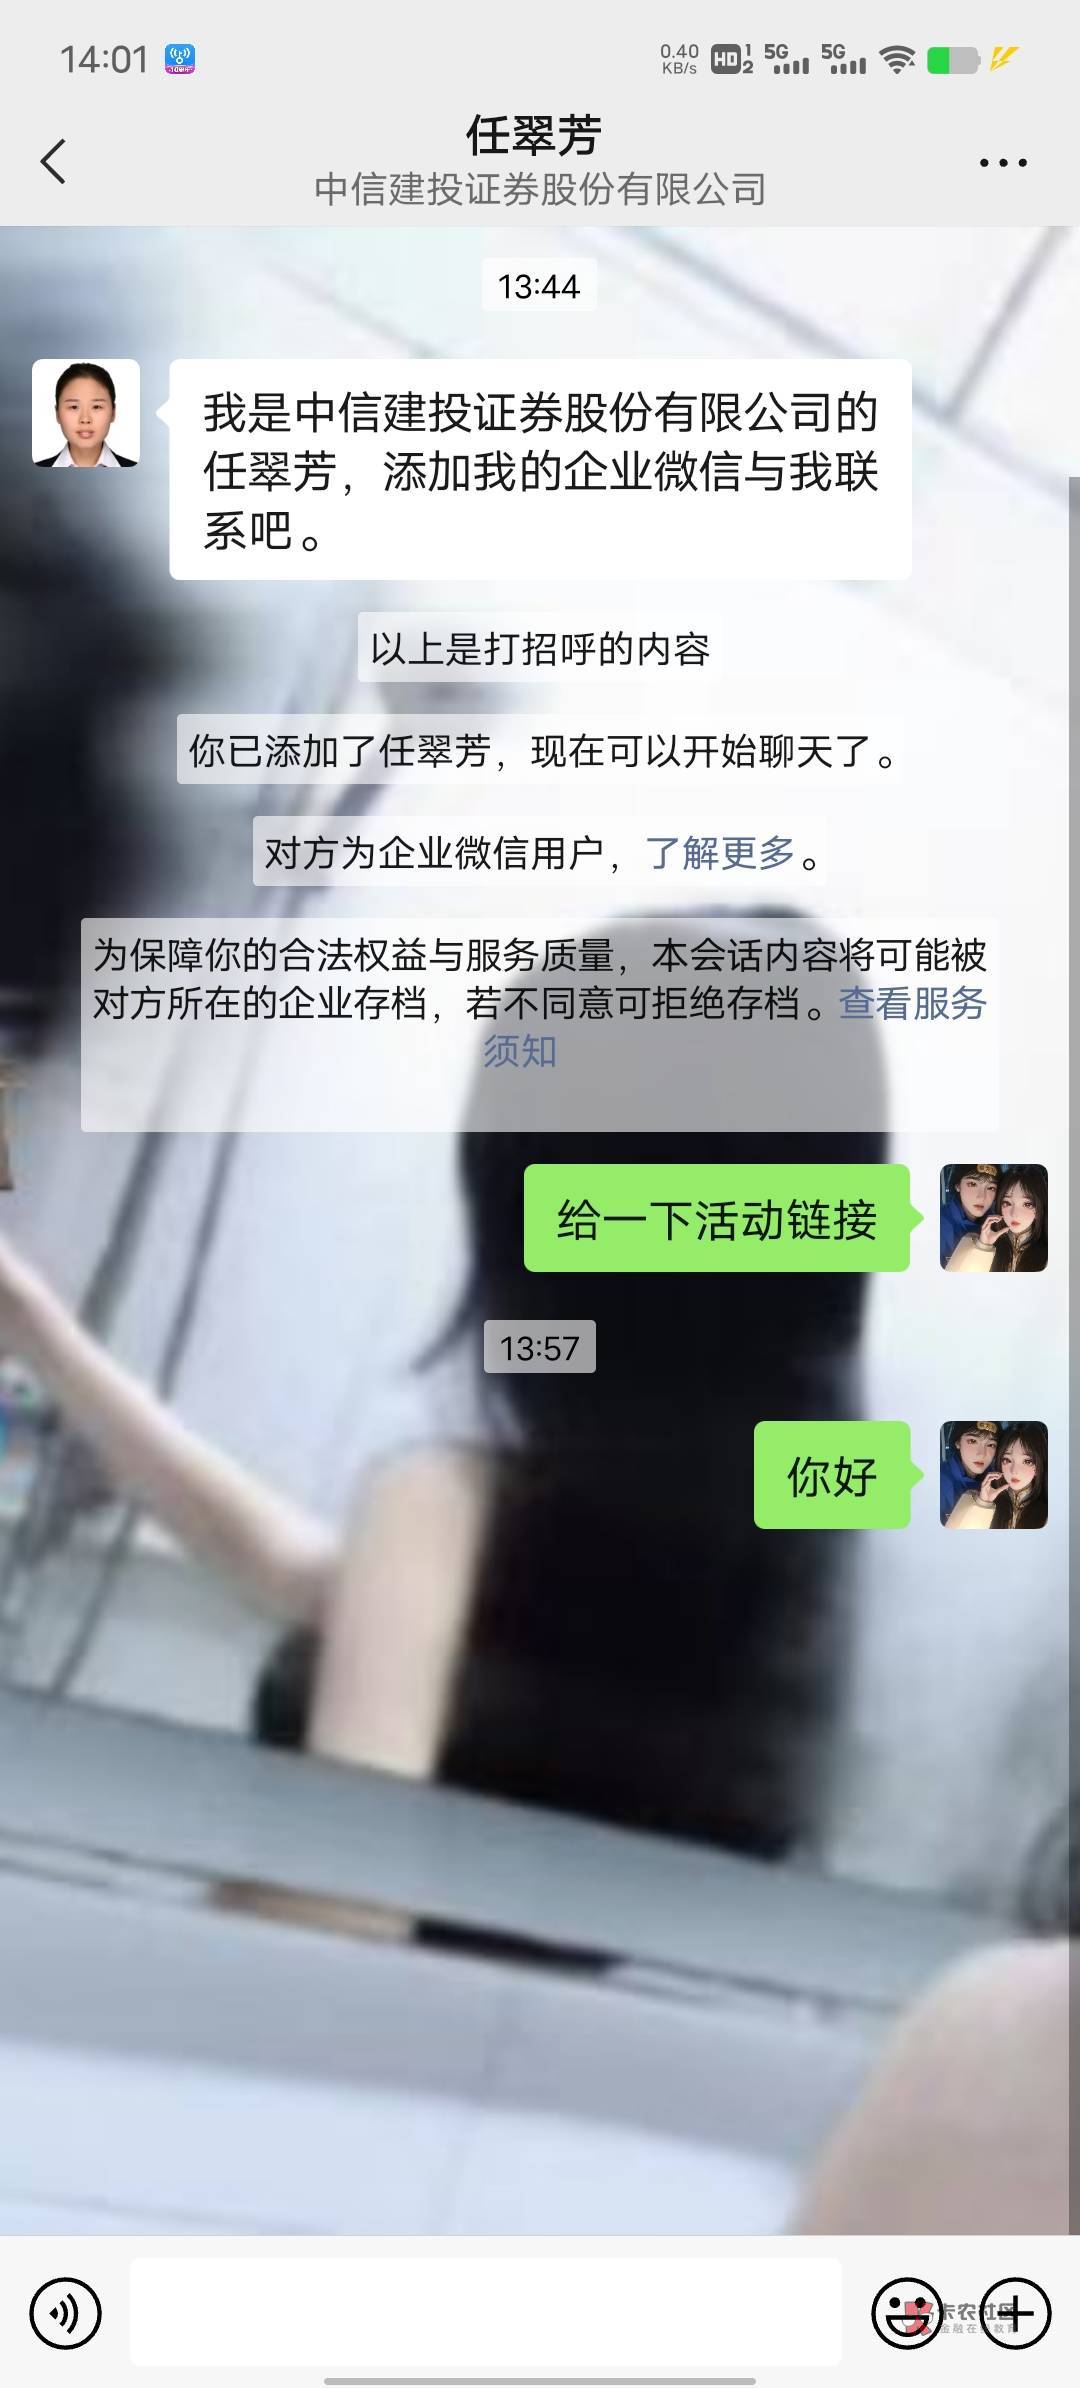 打电话的时候 小芳说加微信给我链接，结果加上了，不回话，中信建投是北京的老哥们去26 / 作者:限量版温柔 / 